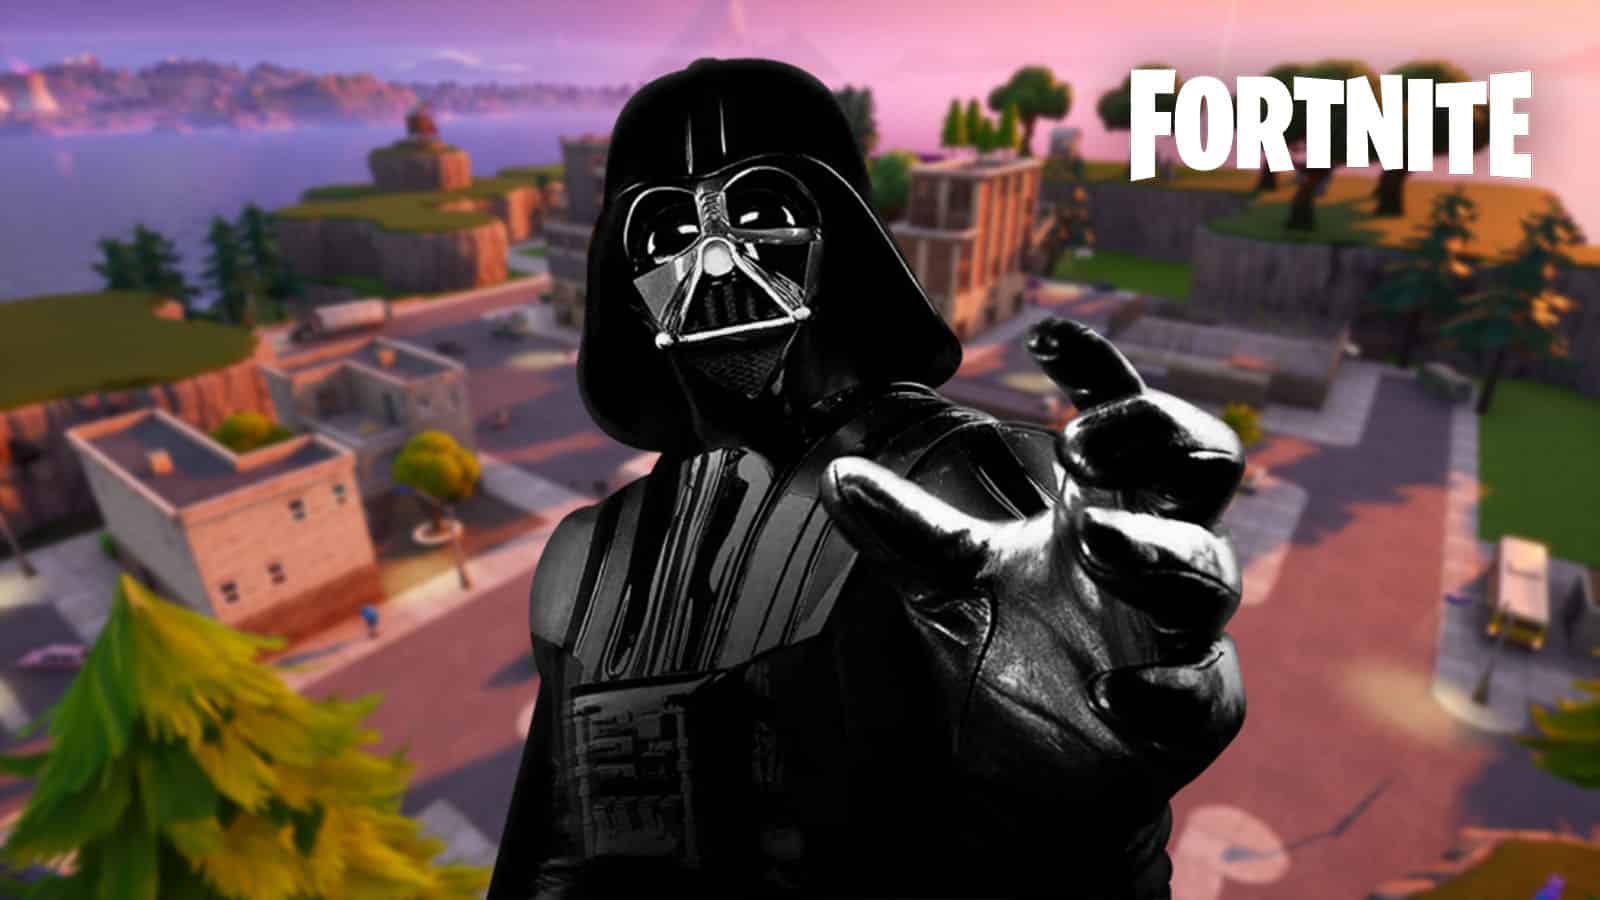 Darth Vader in Fortnite